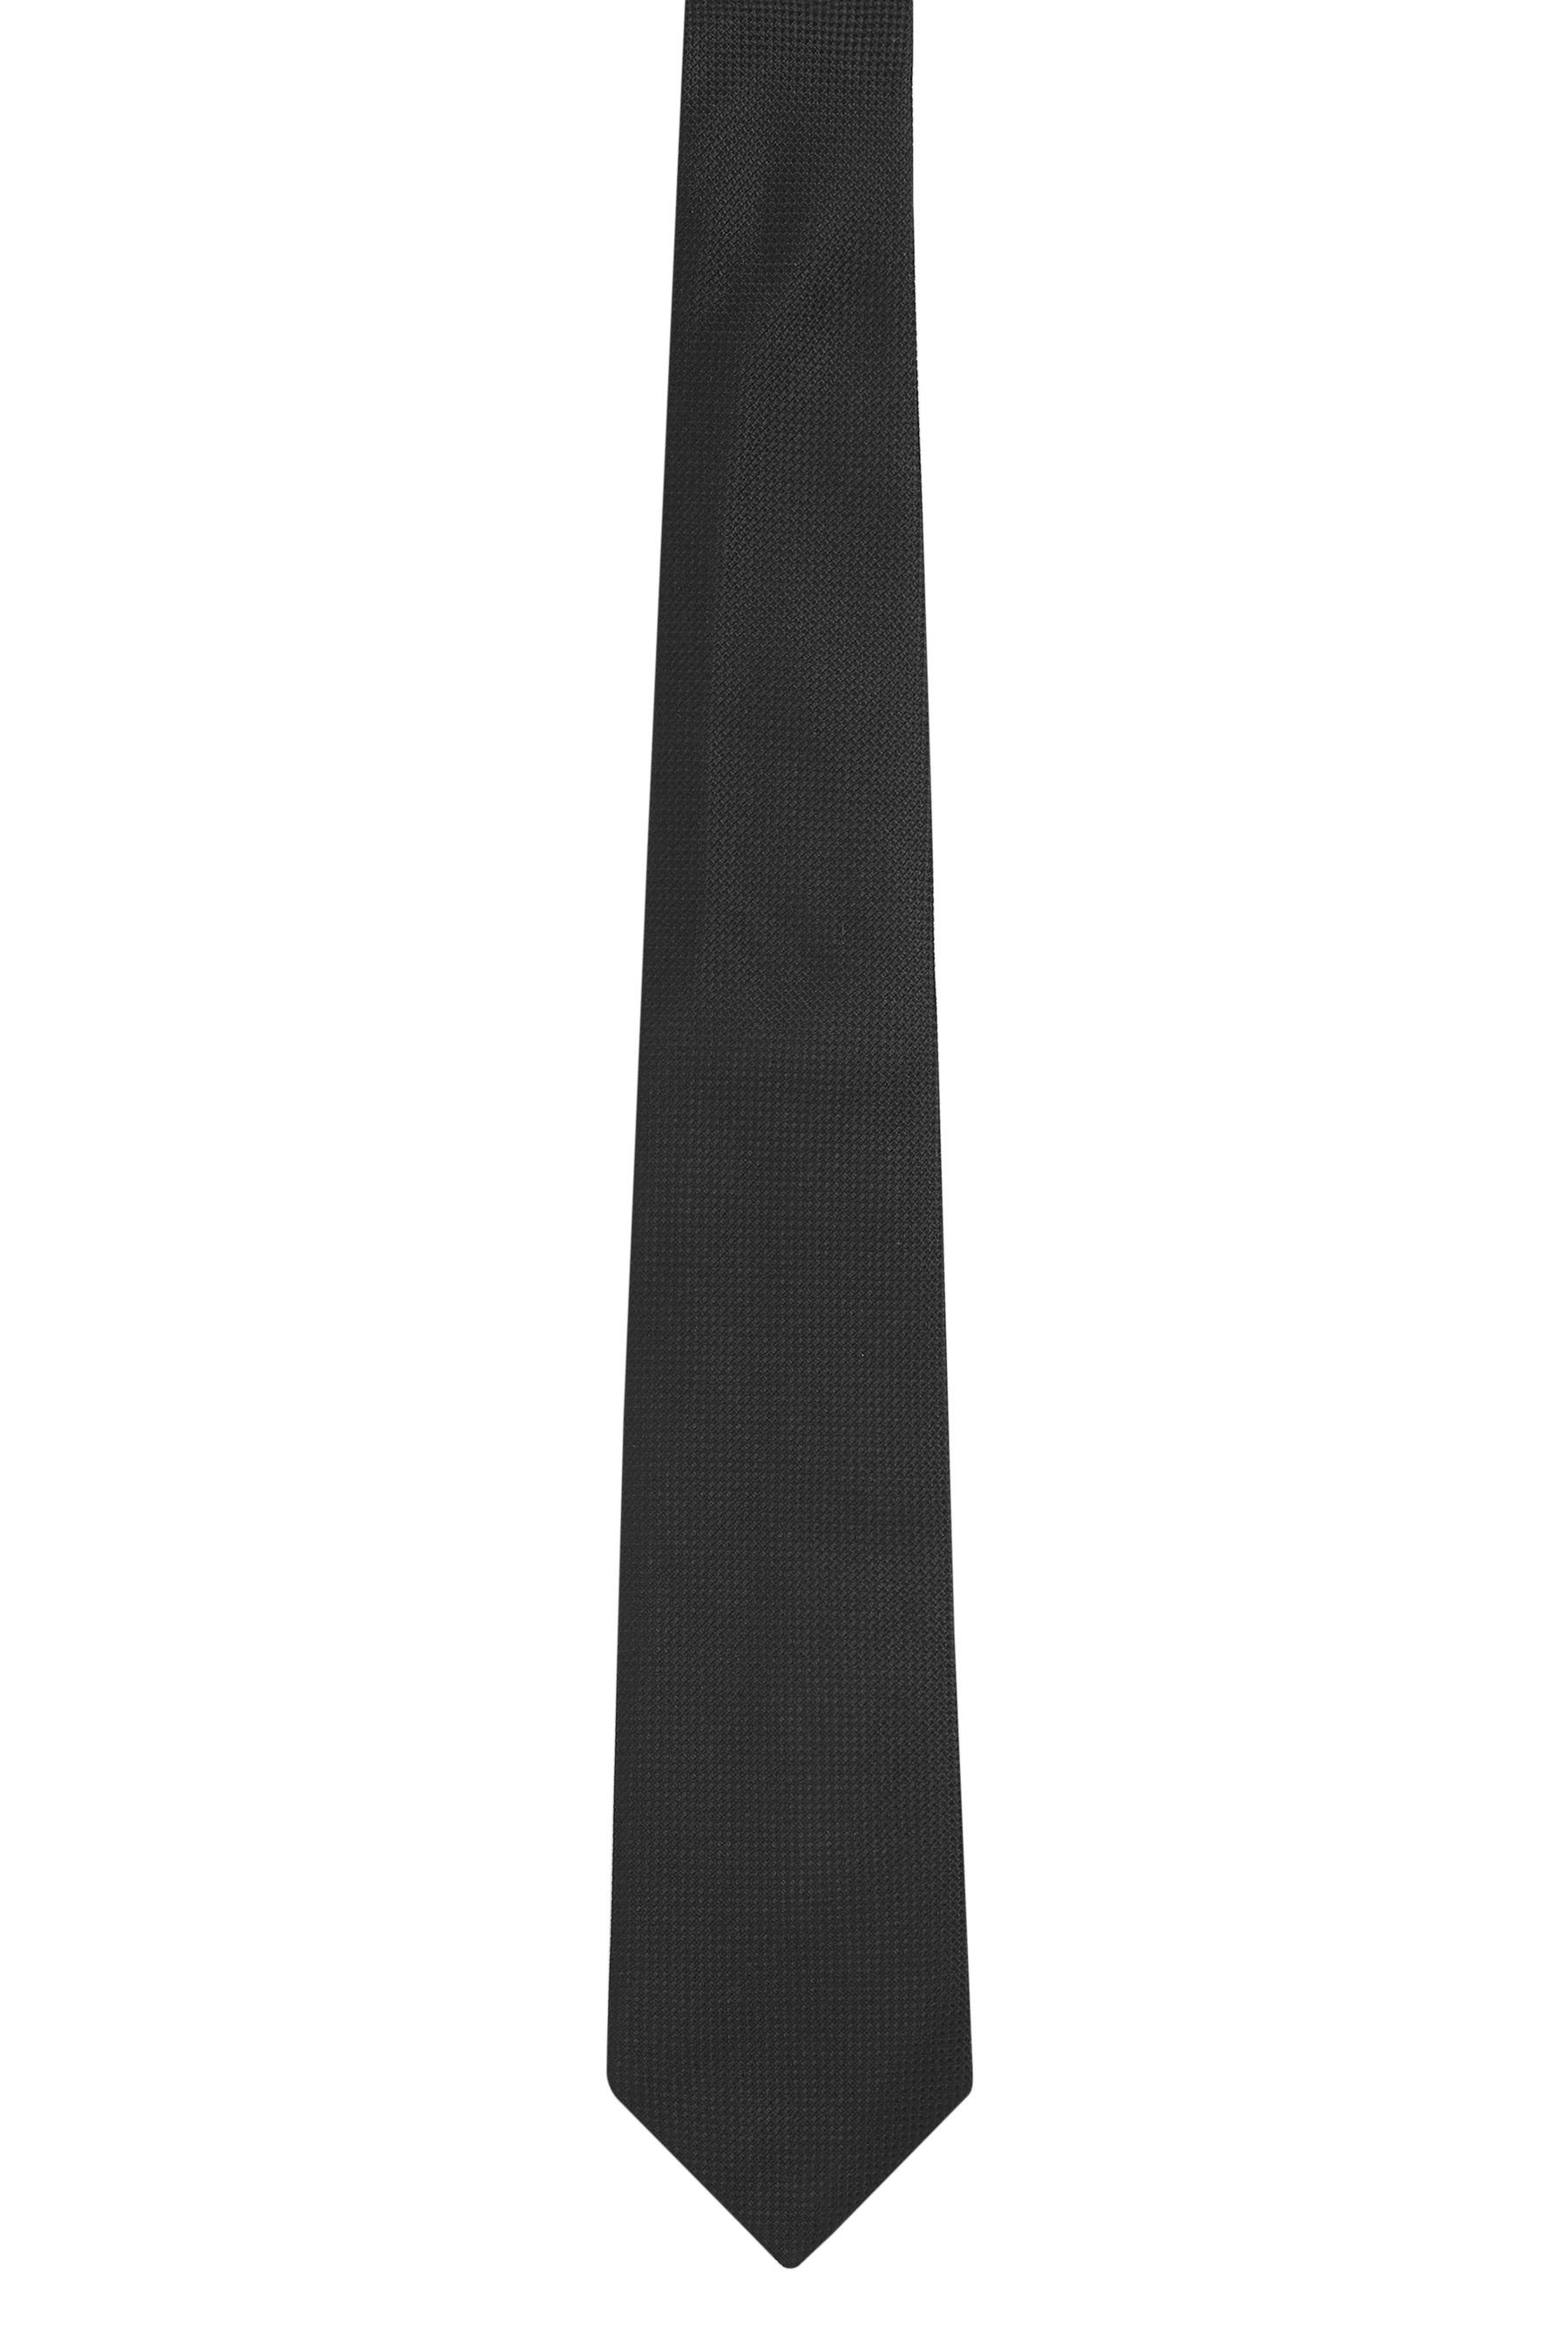 Black (1-St) Signature Seidenkrawatte Next Strukturierte Krawatte